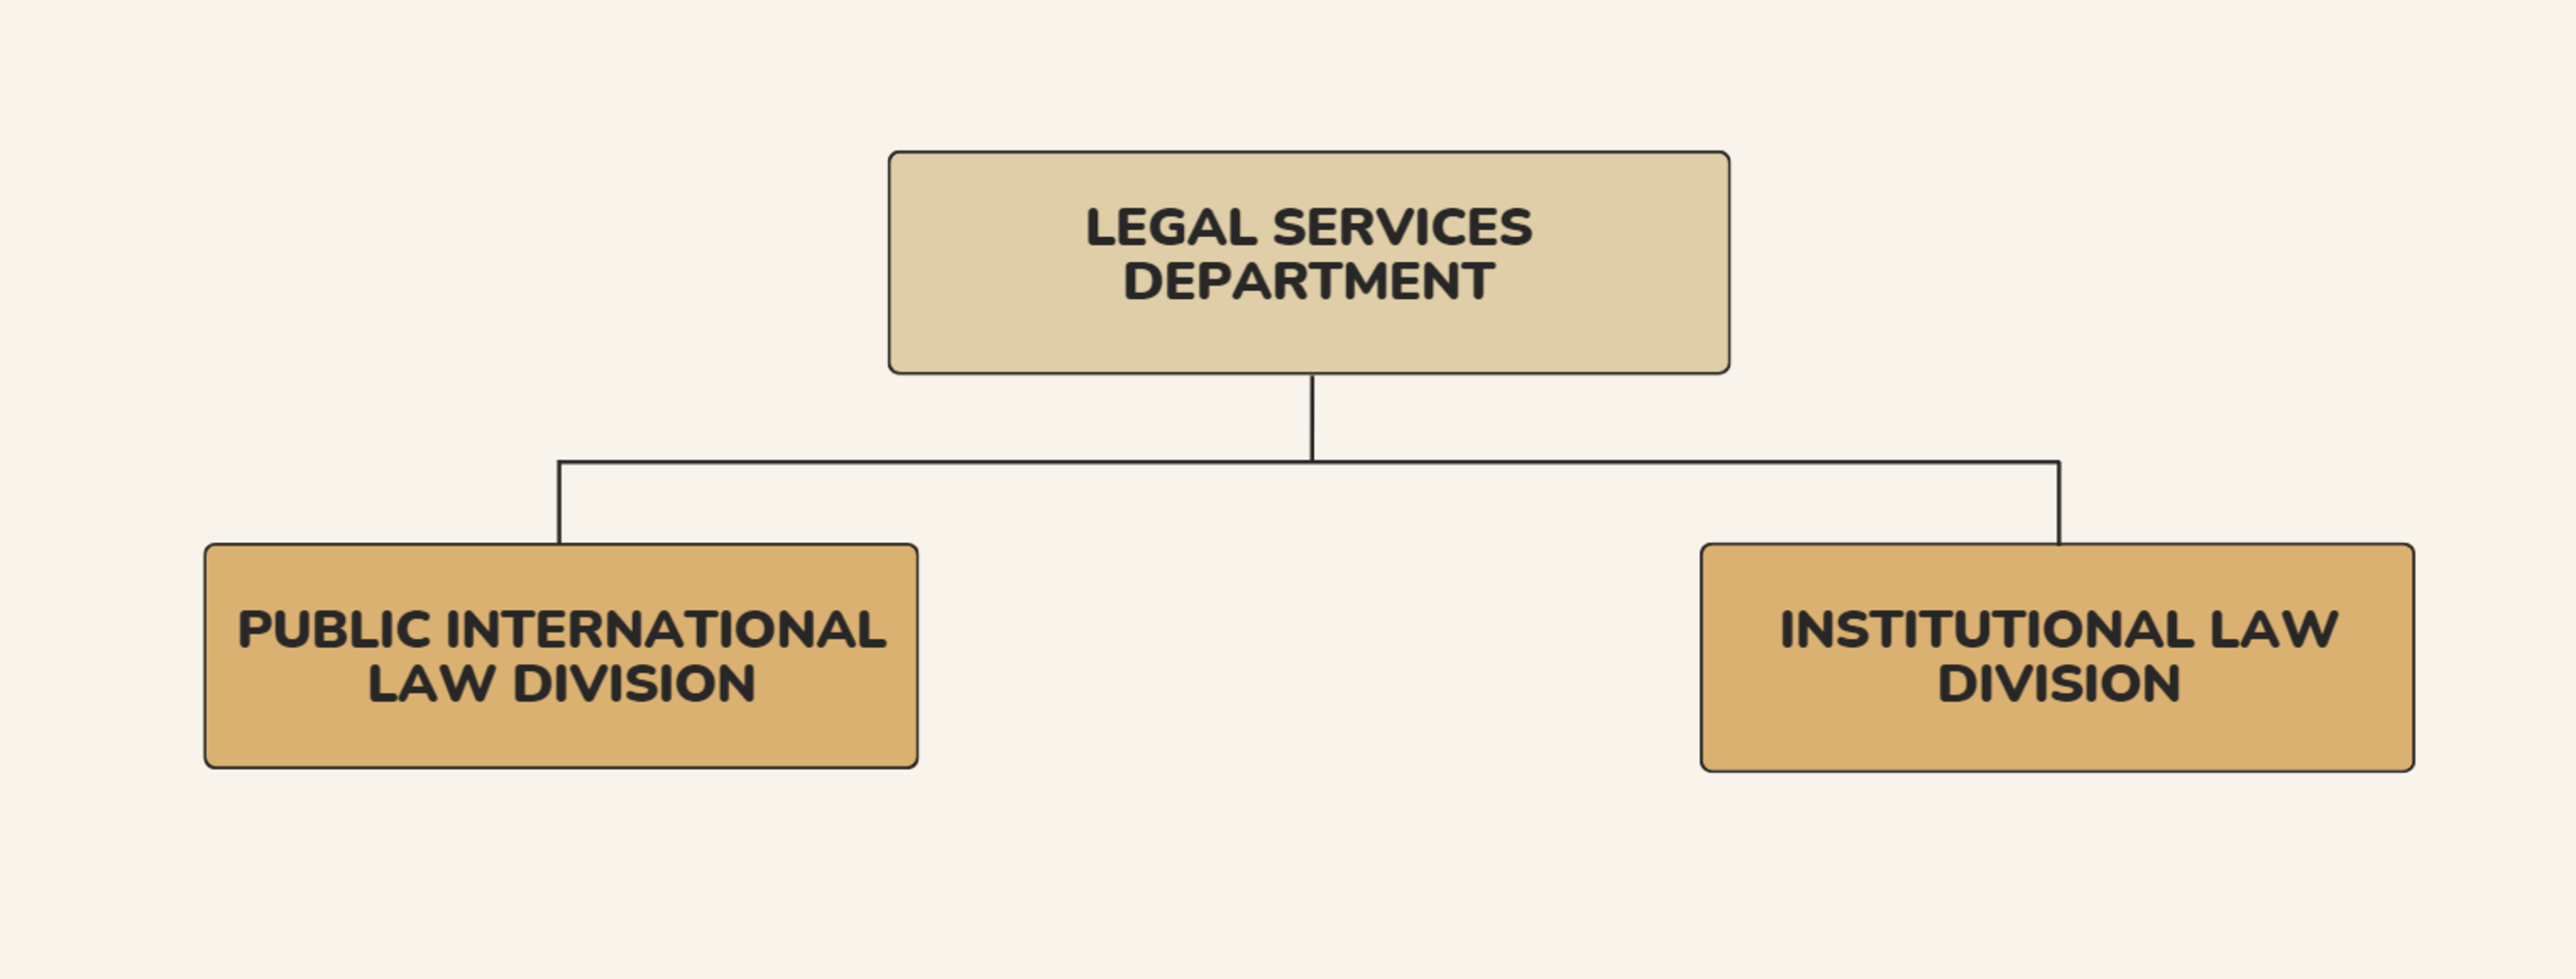 Legal Services Department Organigramm